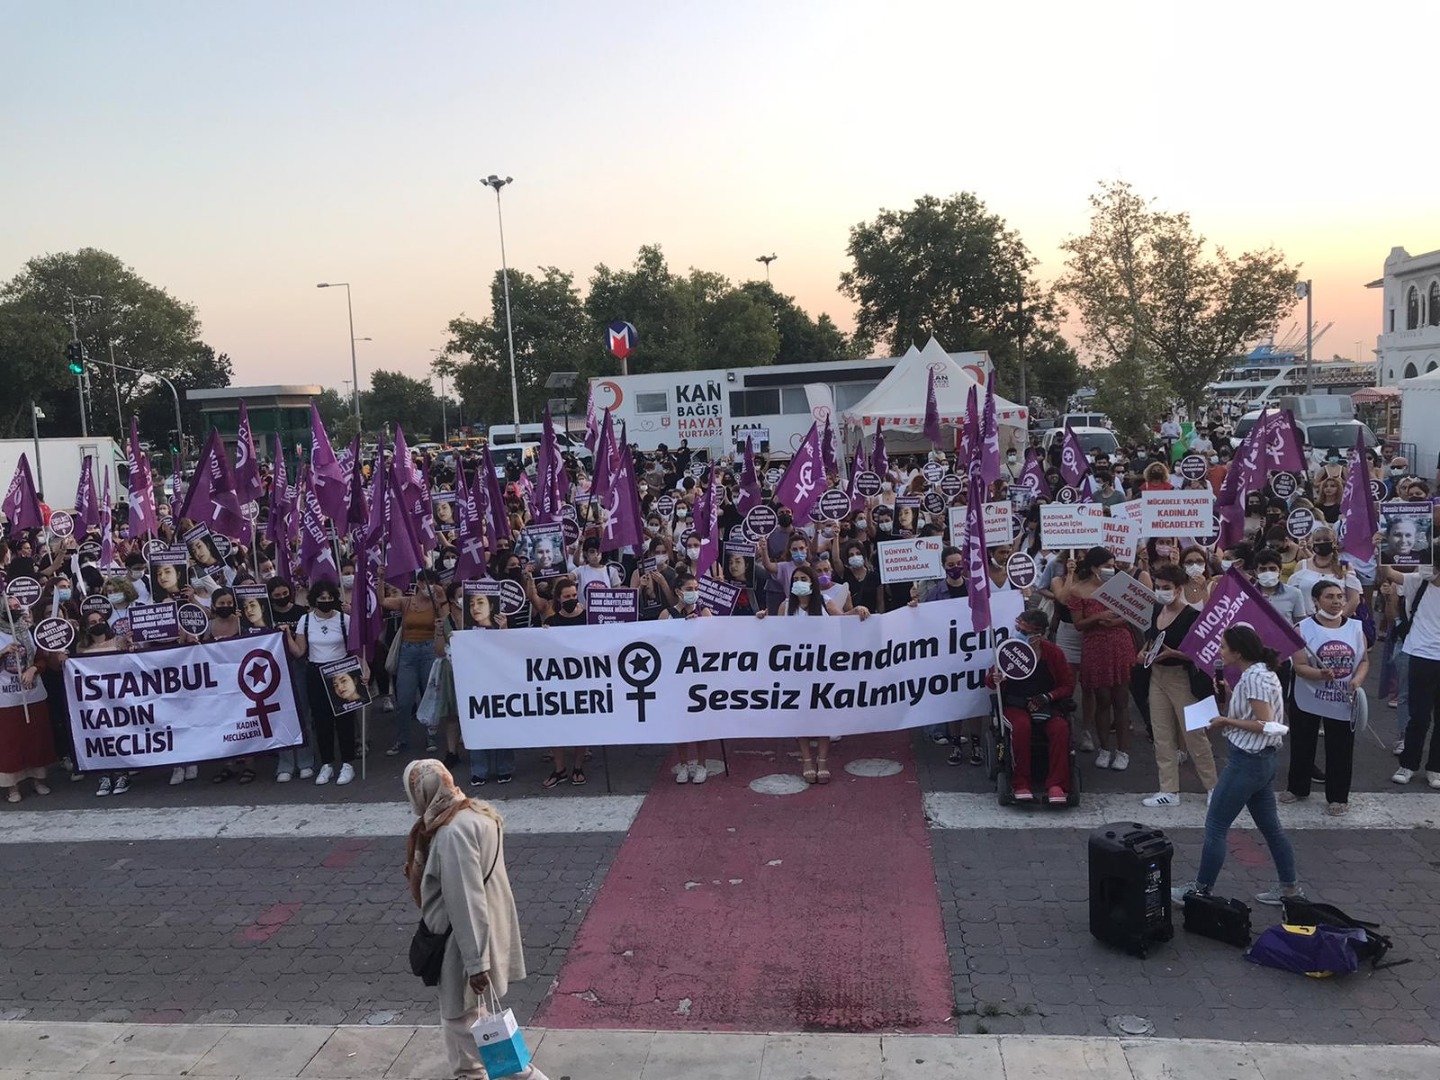 Kadıköy'de Azra Gülendam eylemi